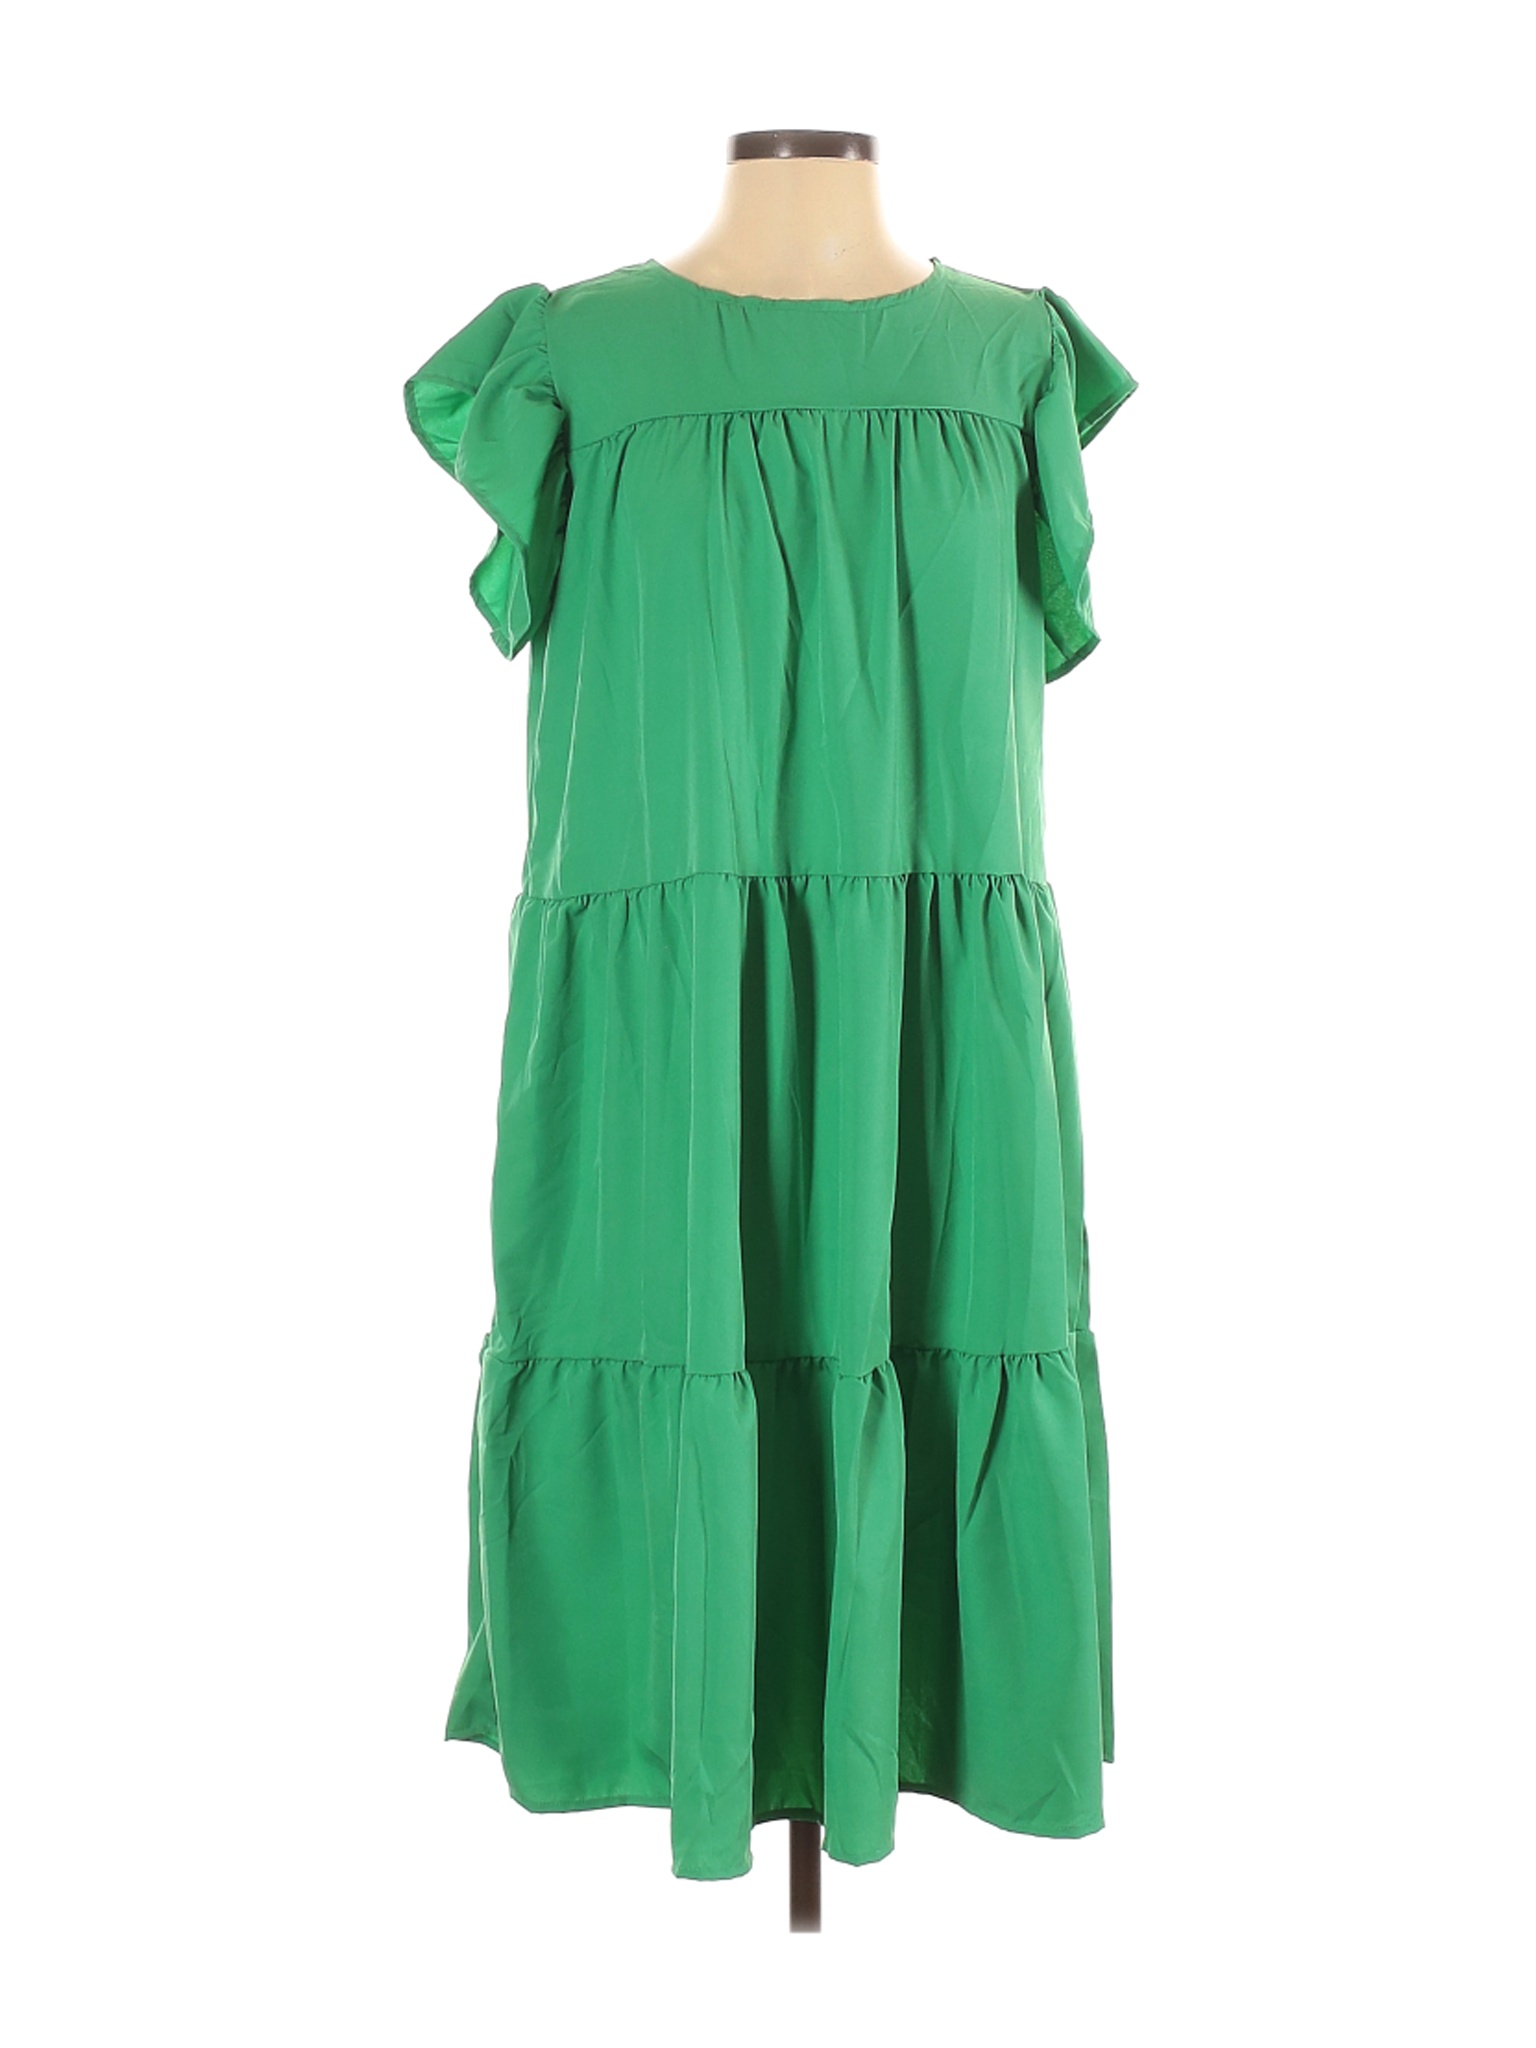 Unbranded Women Green Casual Dress S Ebay